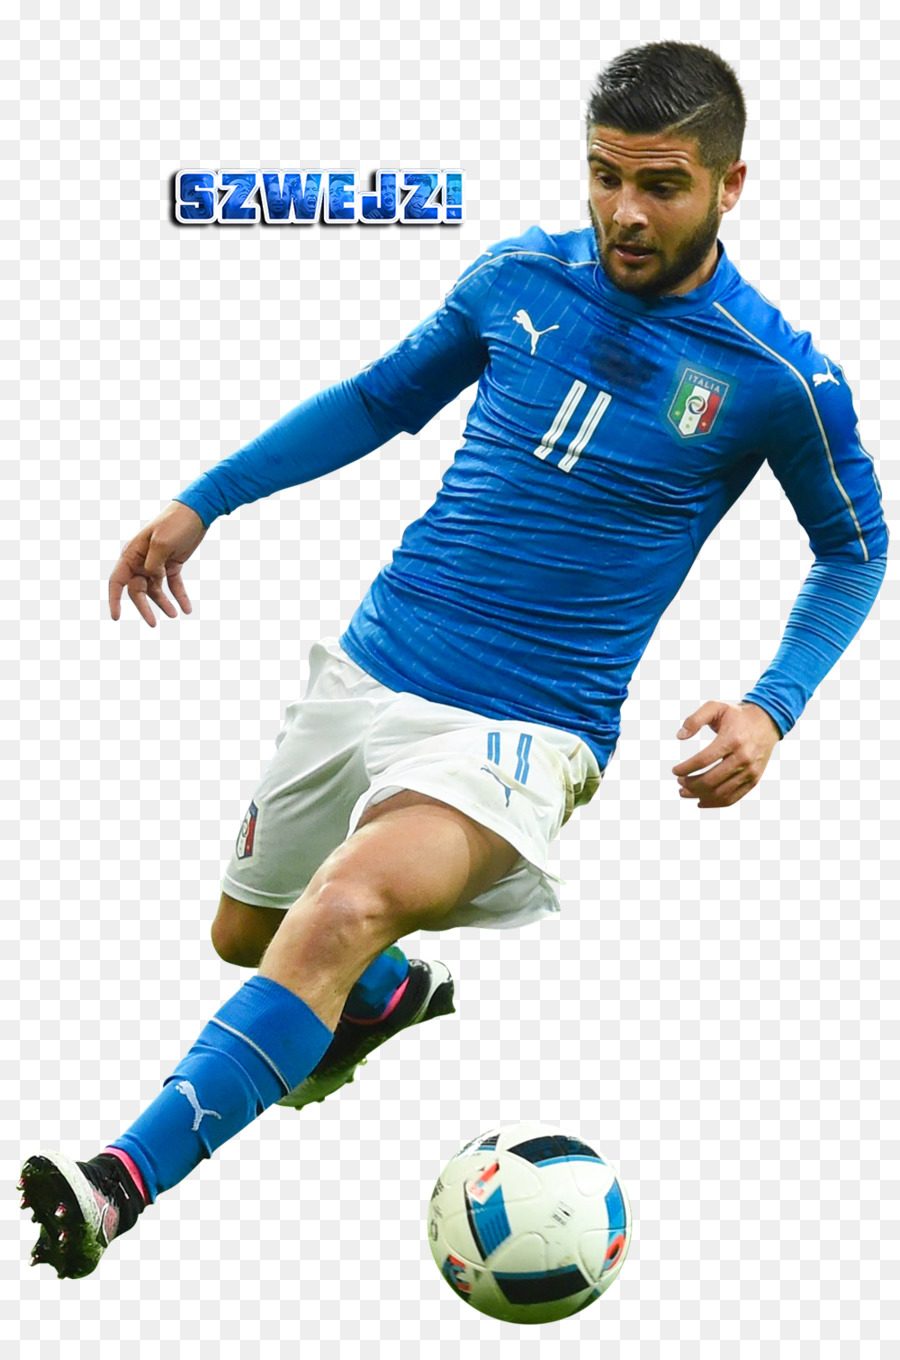 Lorenzo Insigne Italien Fußball-Nationalmannschaft S. S. C. Napoli - Fußball